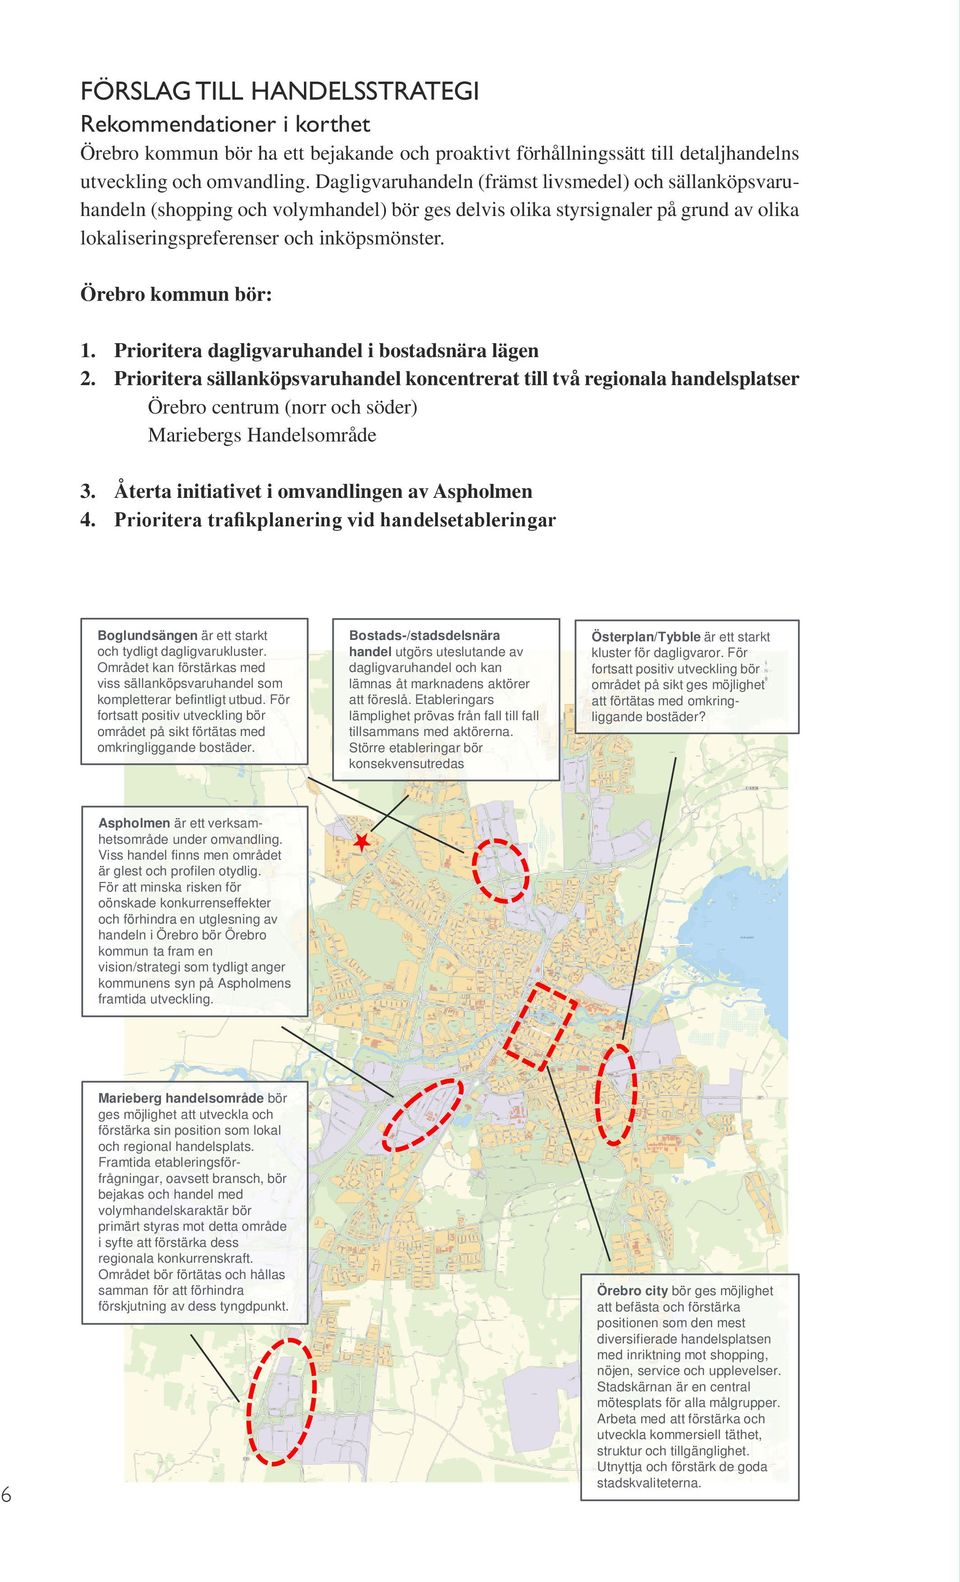 Örebro kommun bör: 1. Prioritera dagligvaruhandel i bostadsnära lägen 2.